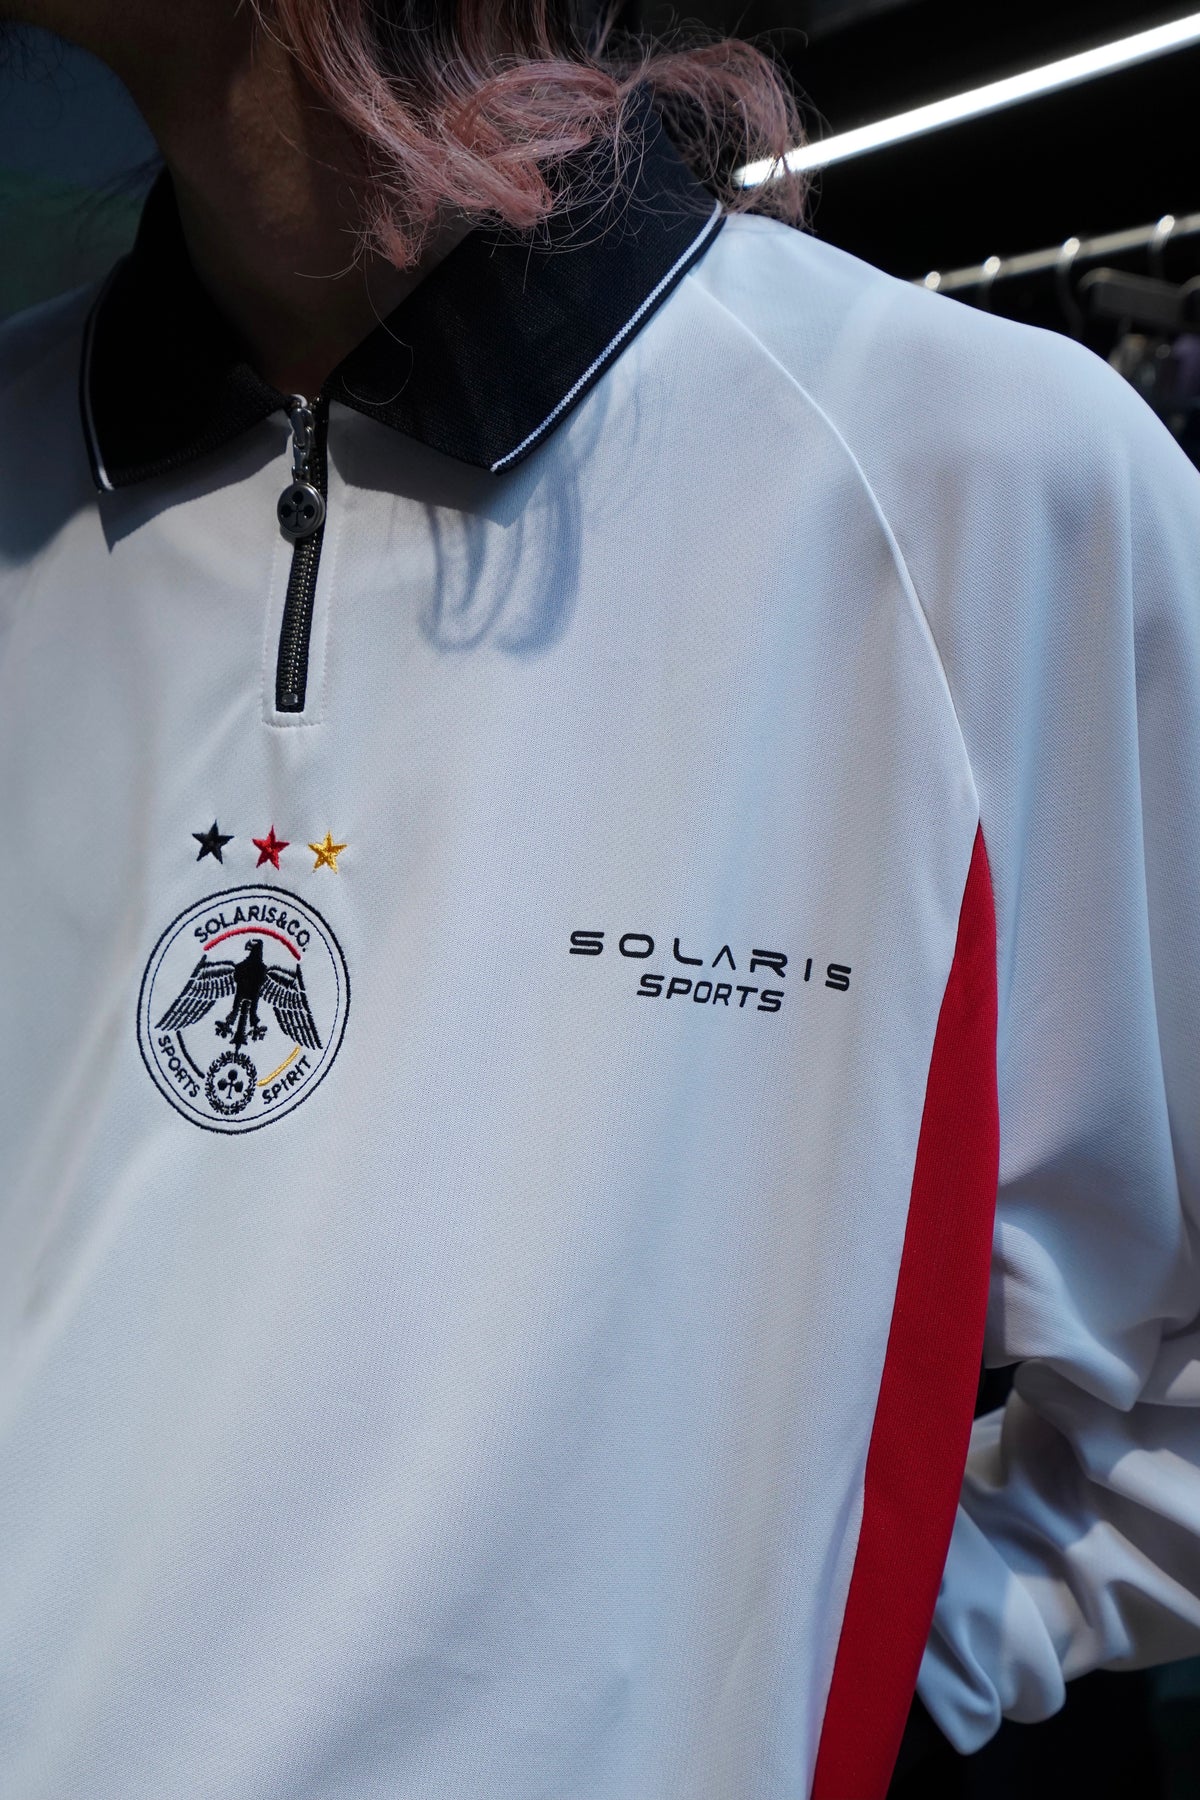 SOLARIS&Co.(ソラリスアンドコー)のL/S FOOTBALL SHIRT(WHITE